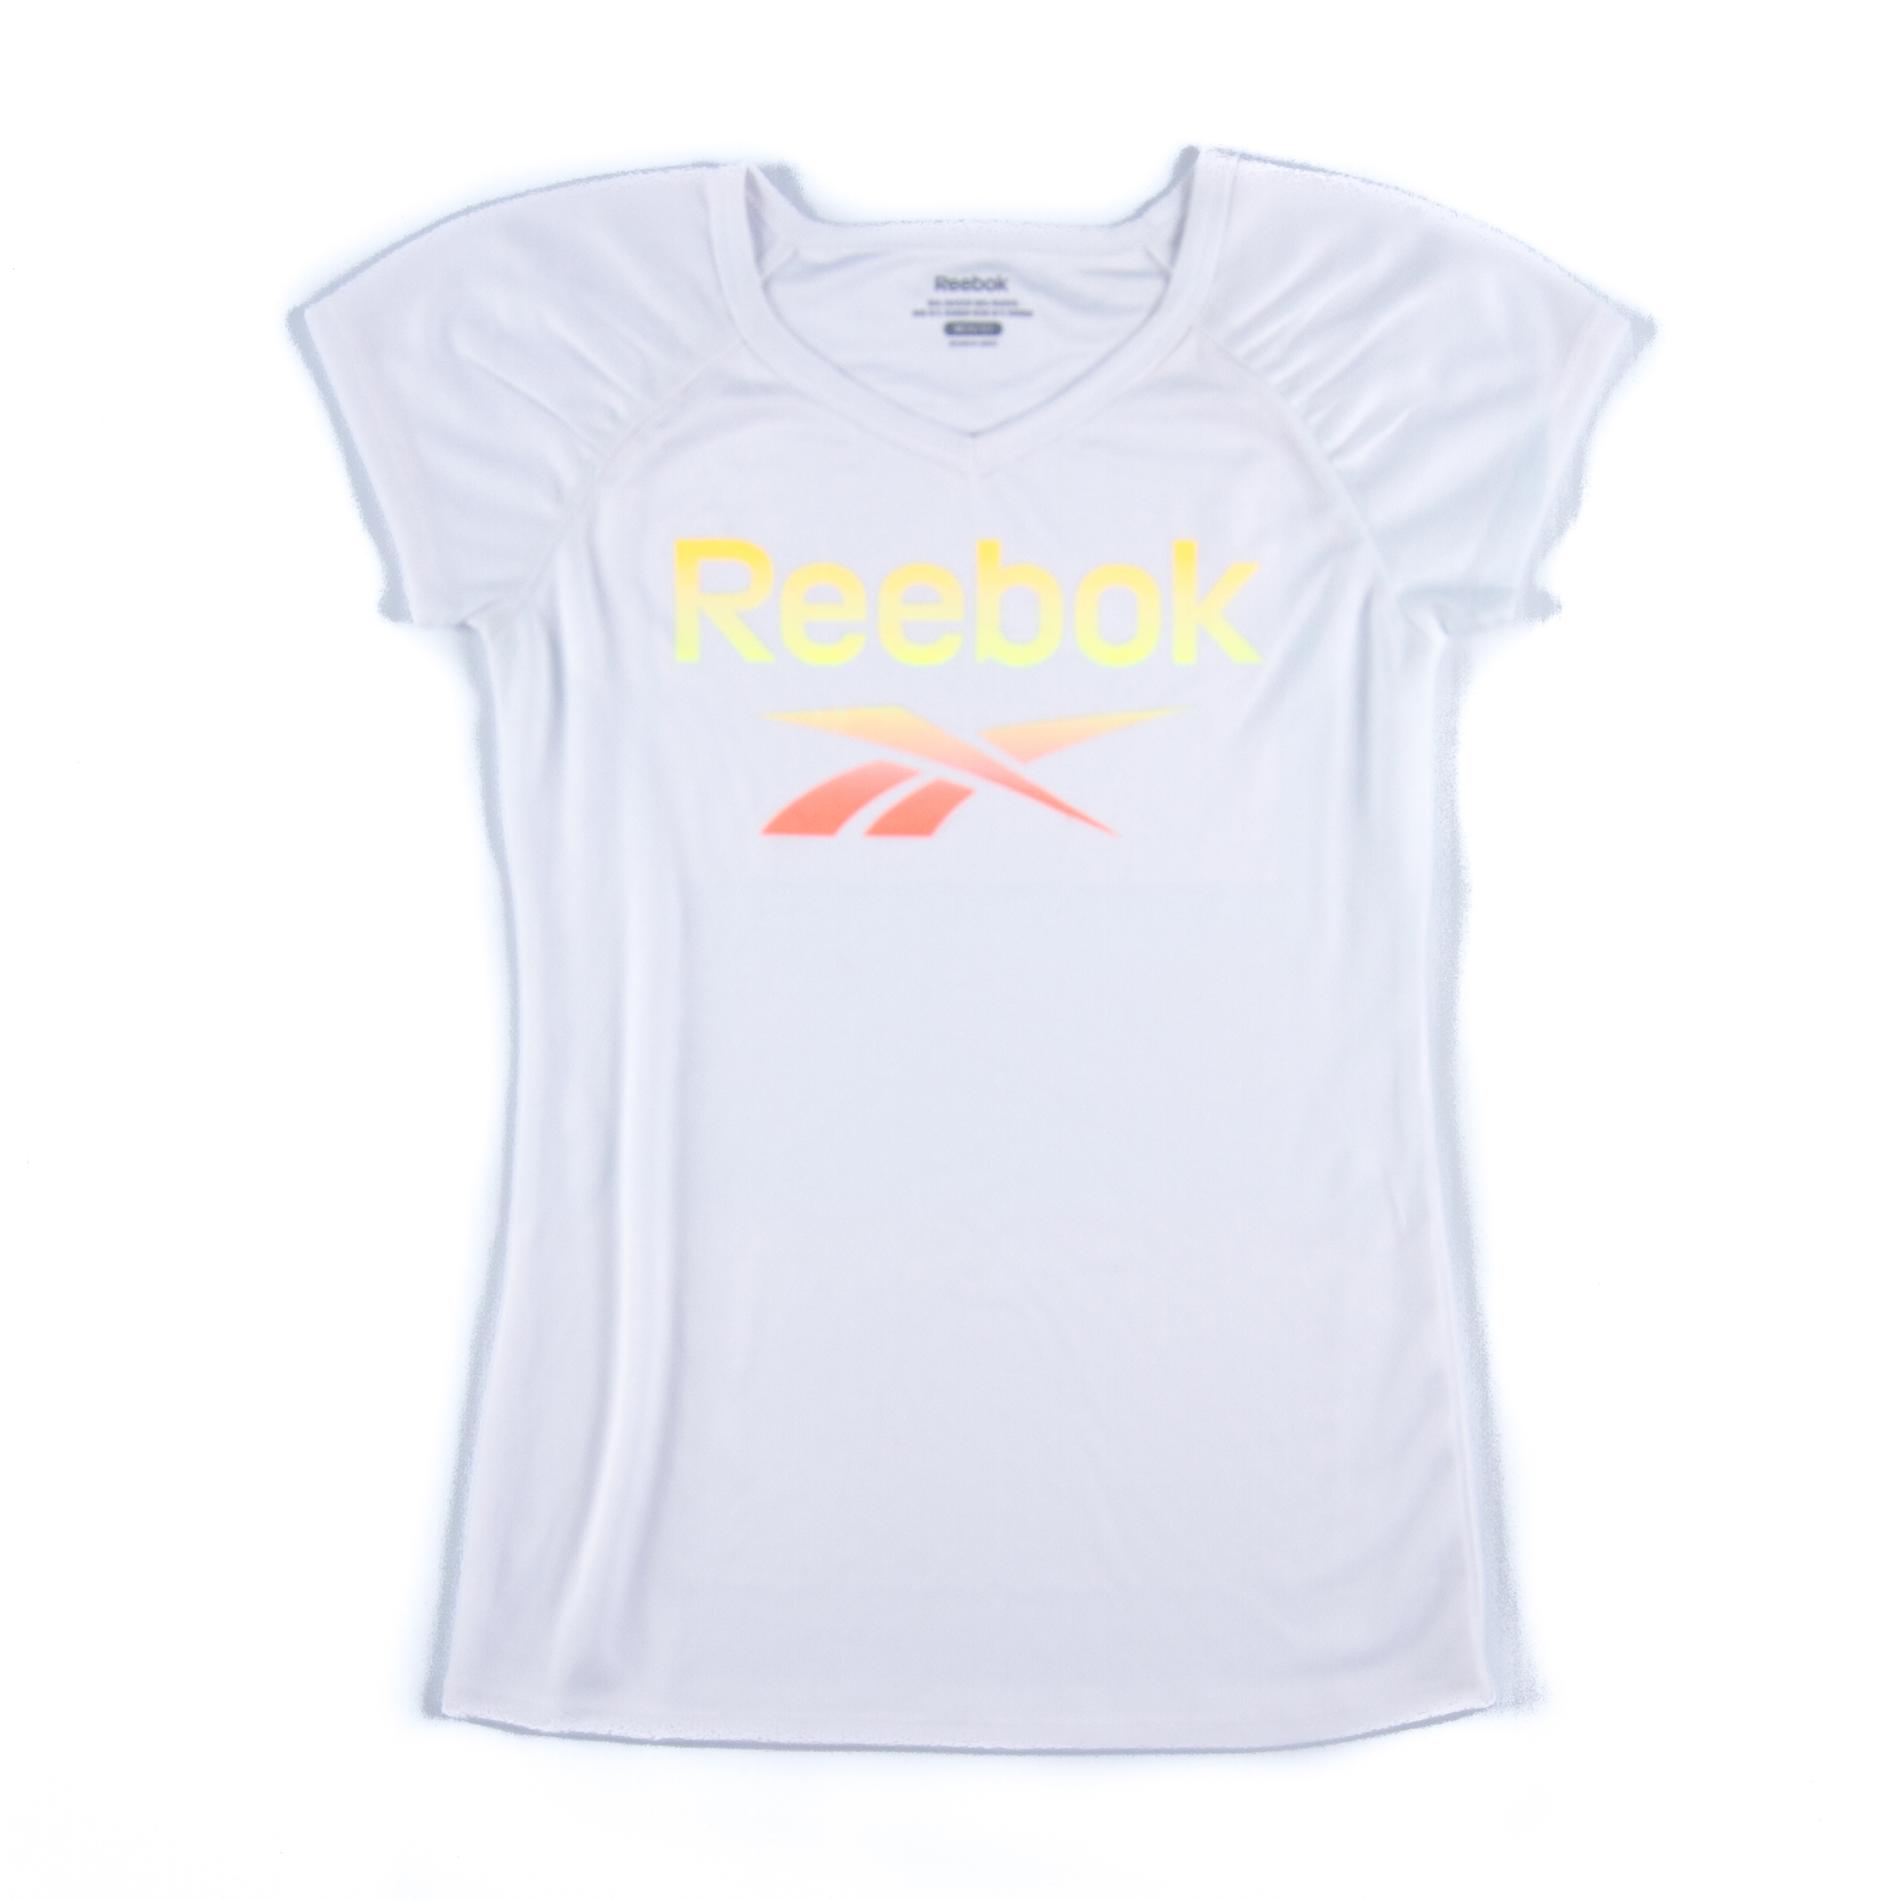 Reebok Girl's Short-Sleeve Athletic Top